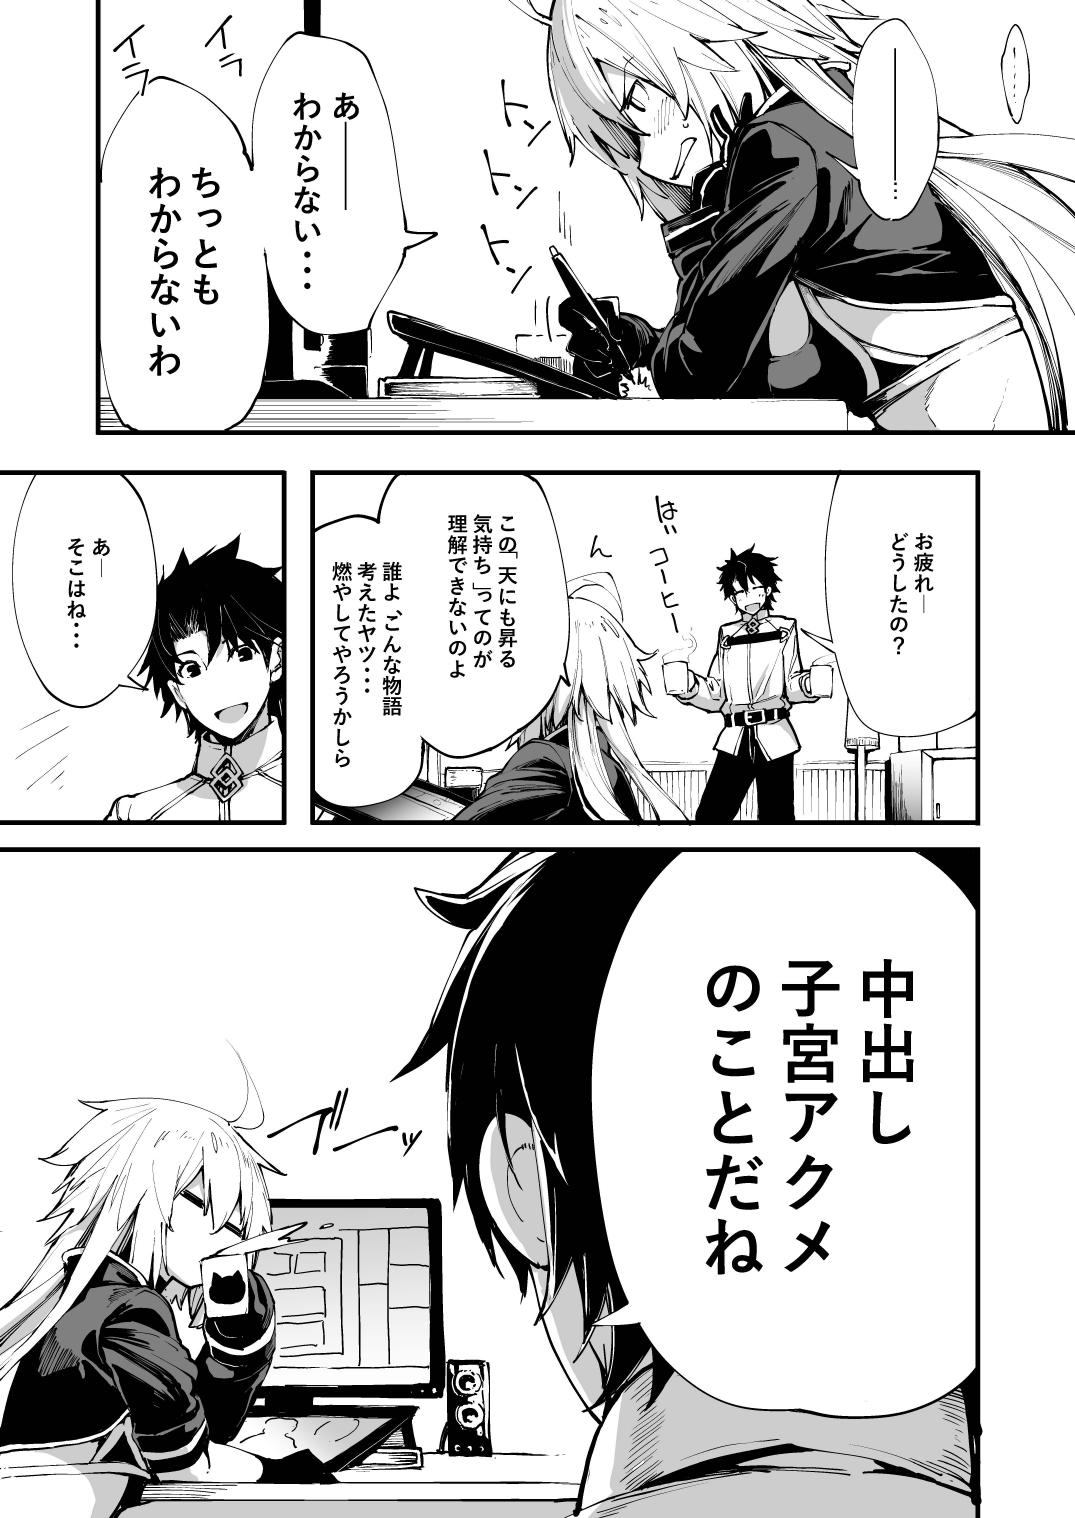 Muscular Kuroneko ga Nyan to Naku. - Fate grand order Nuru - Page 2